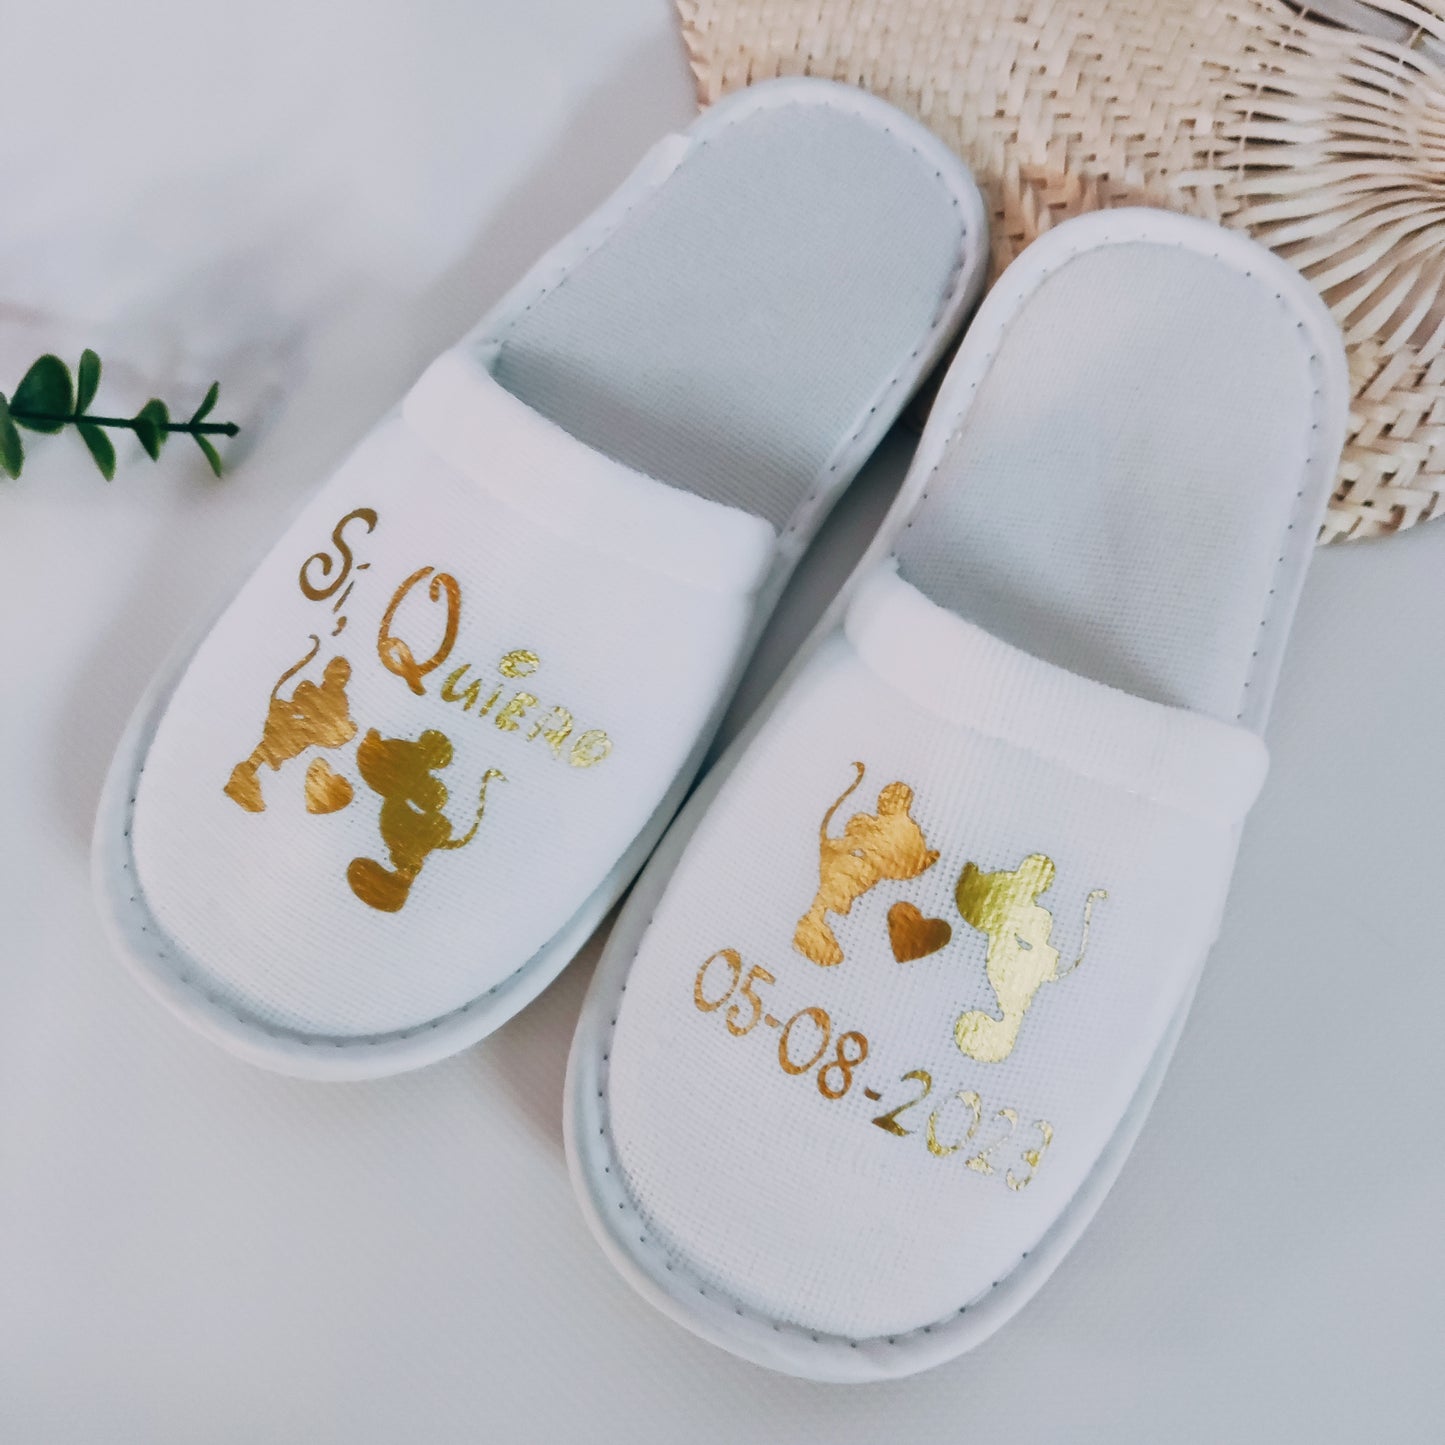 Zapatillas personalizadas para damas de honor y novias